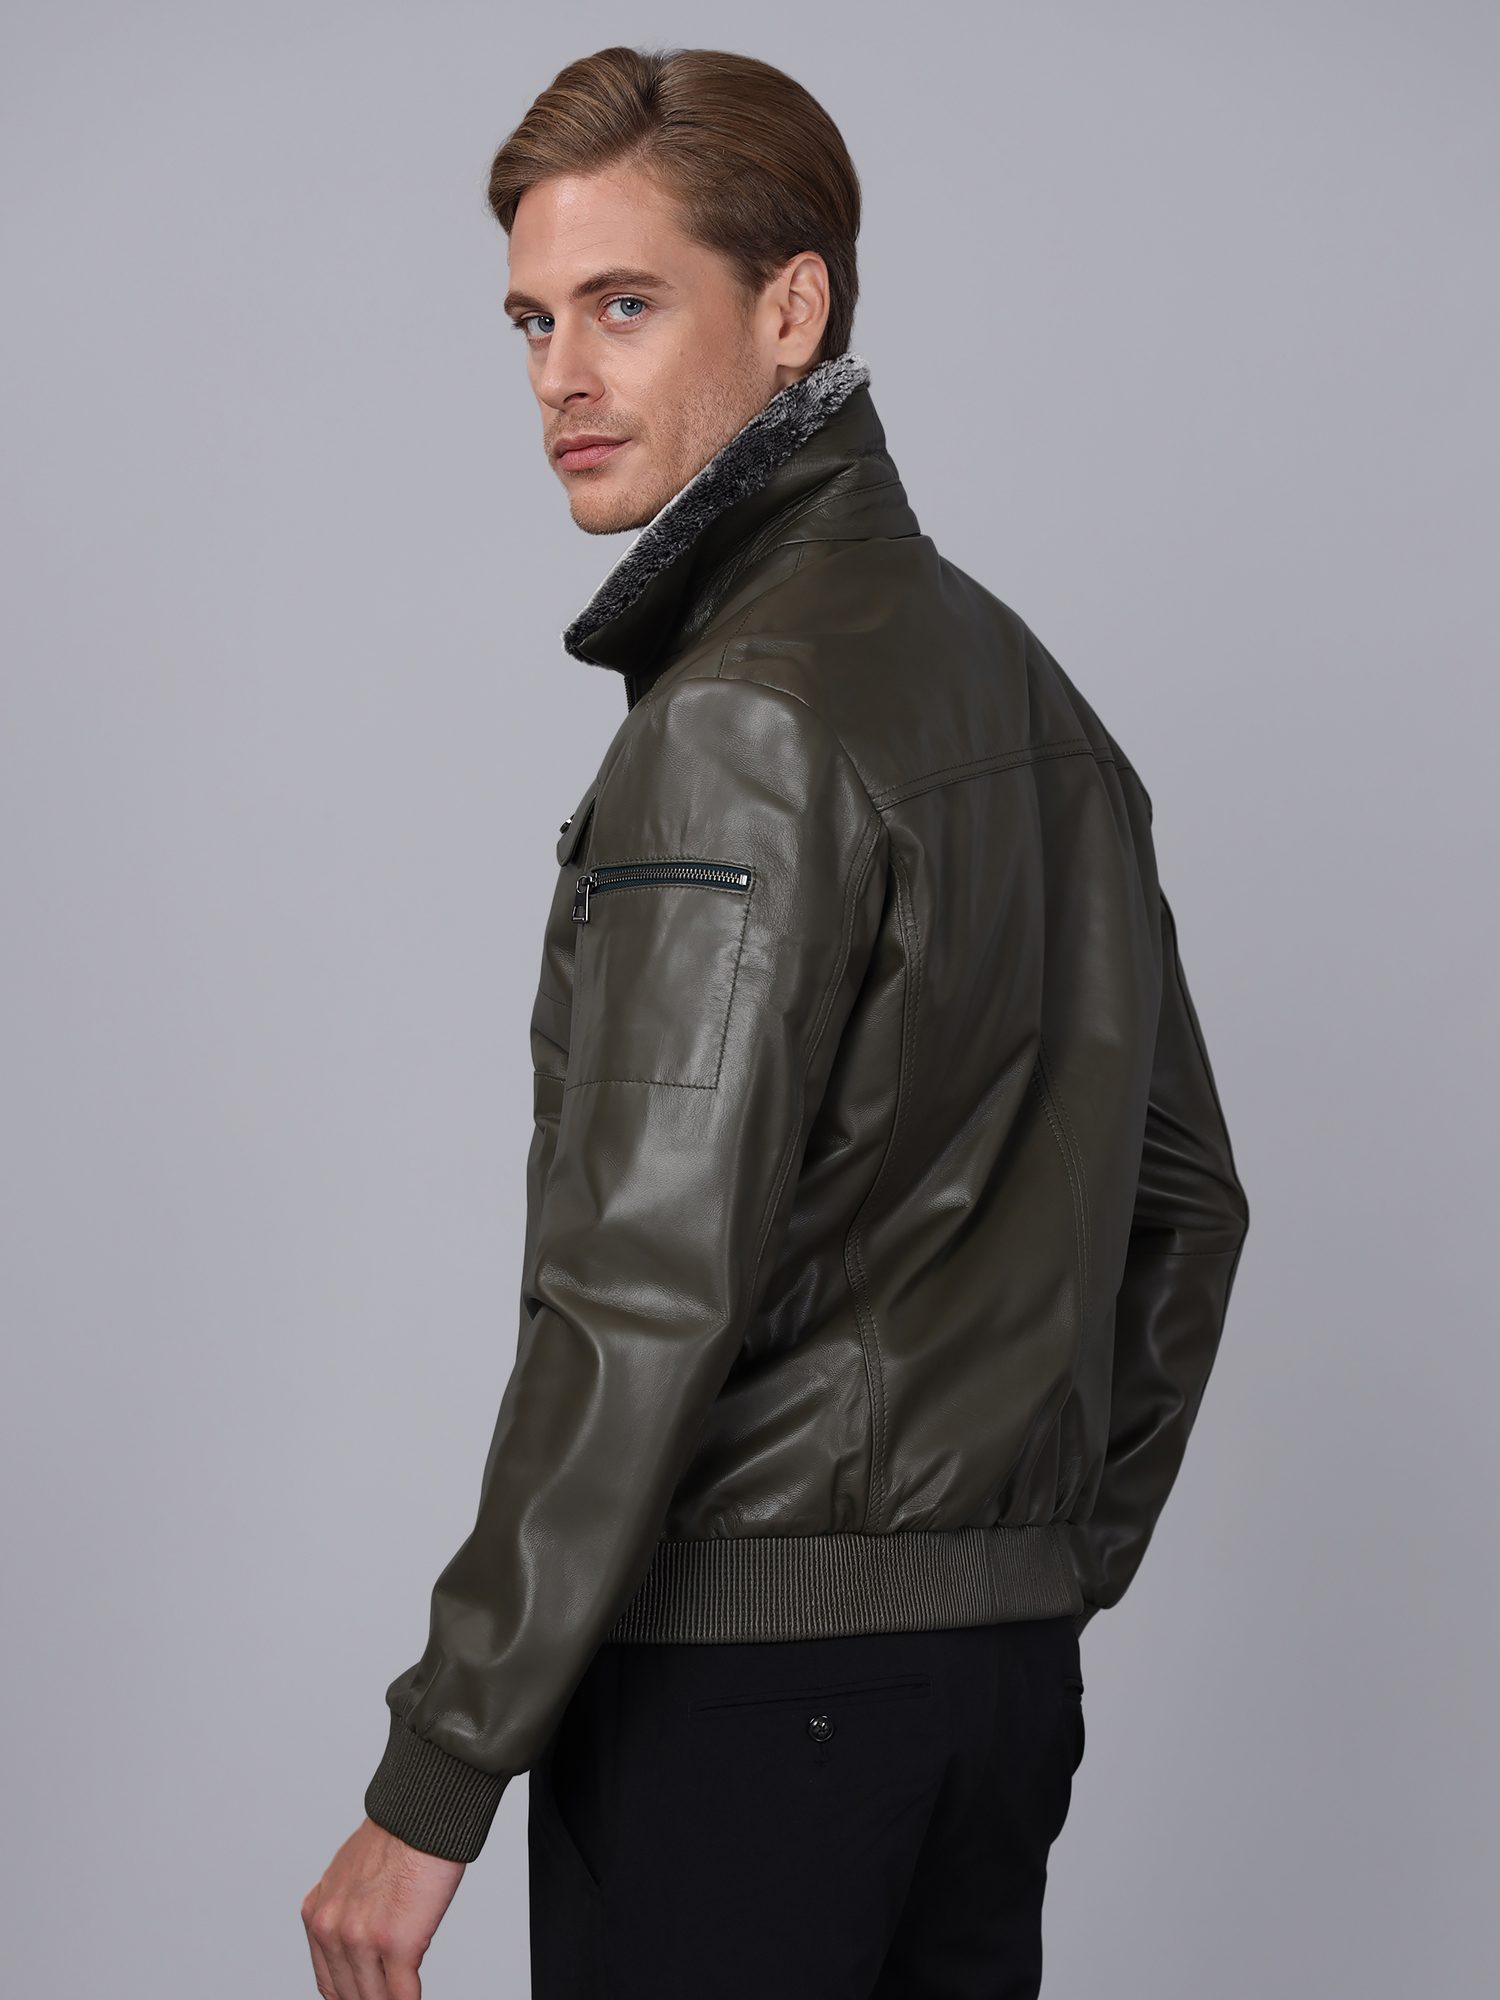 Men's Leather Jacket - Basics&More